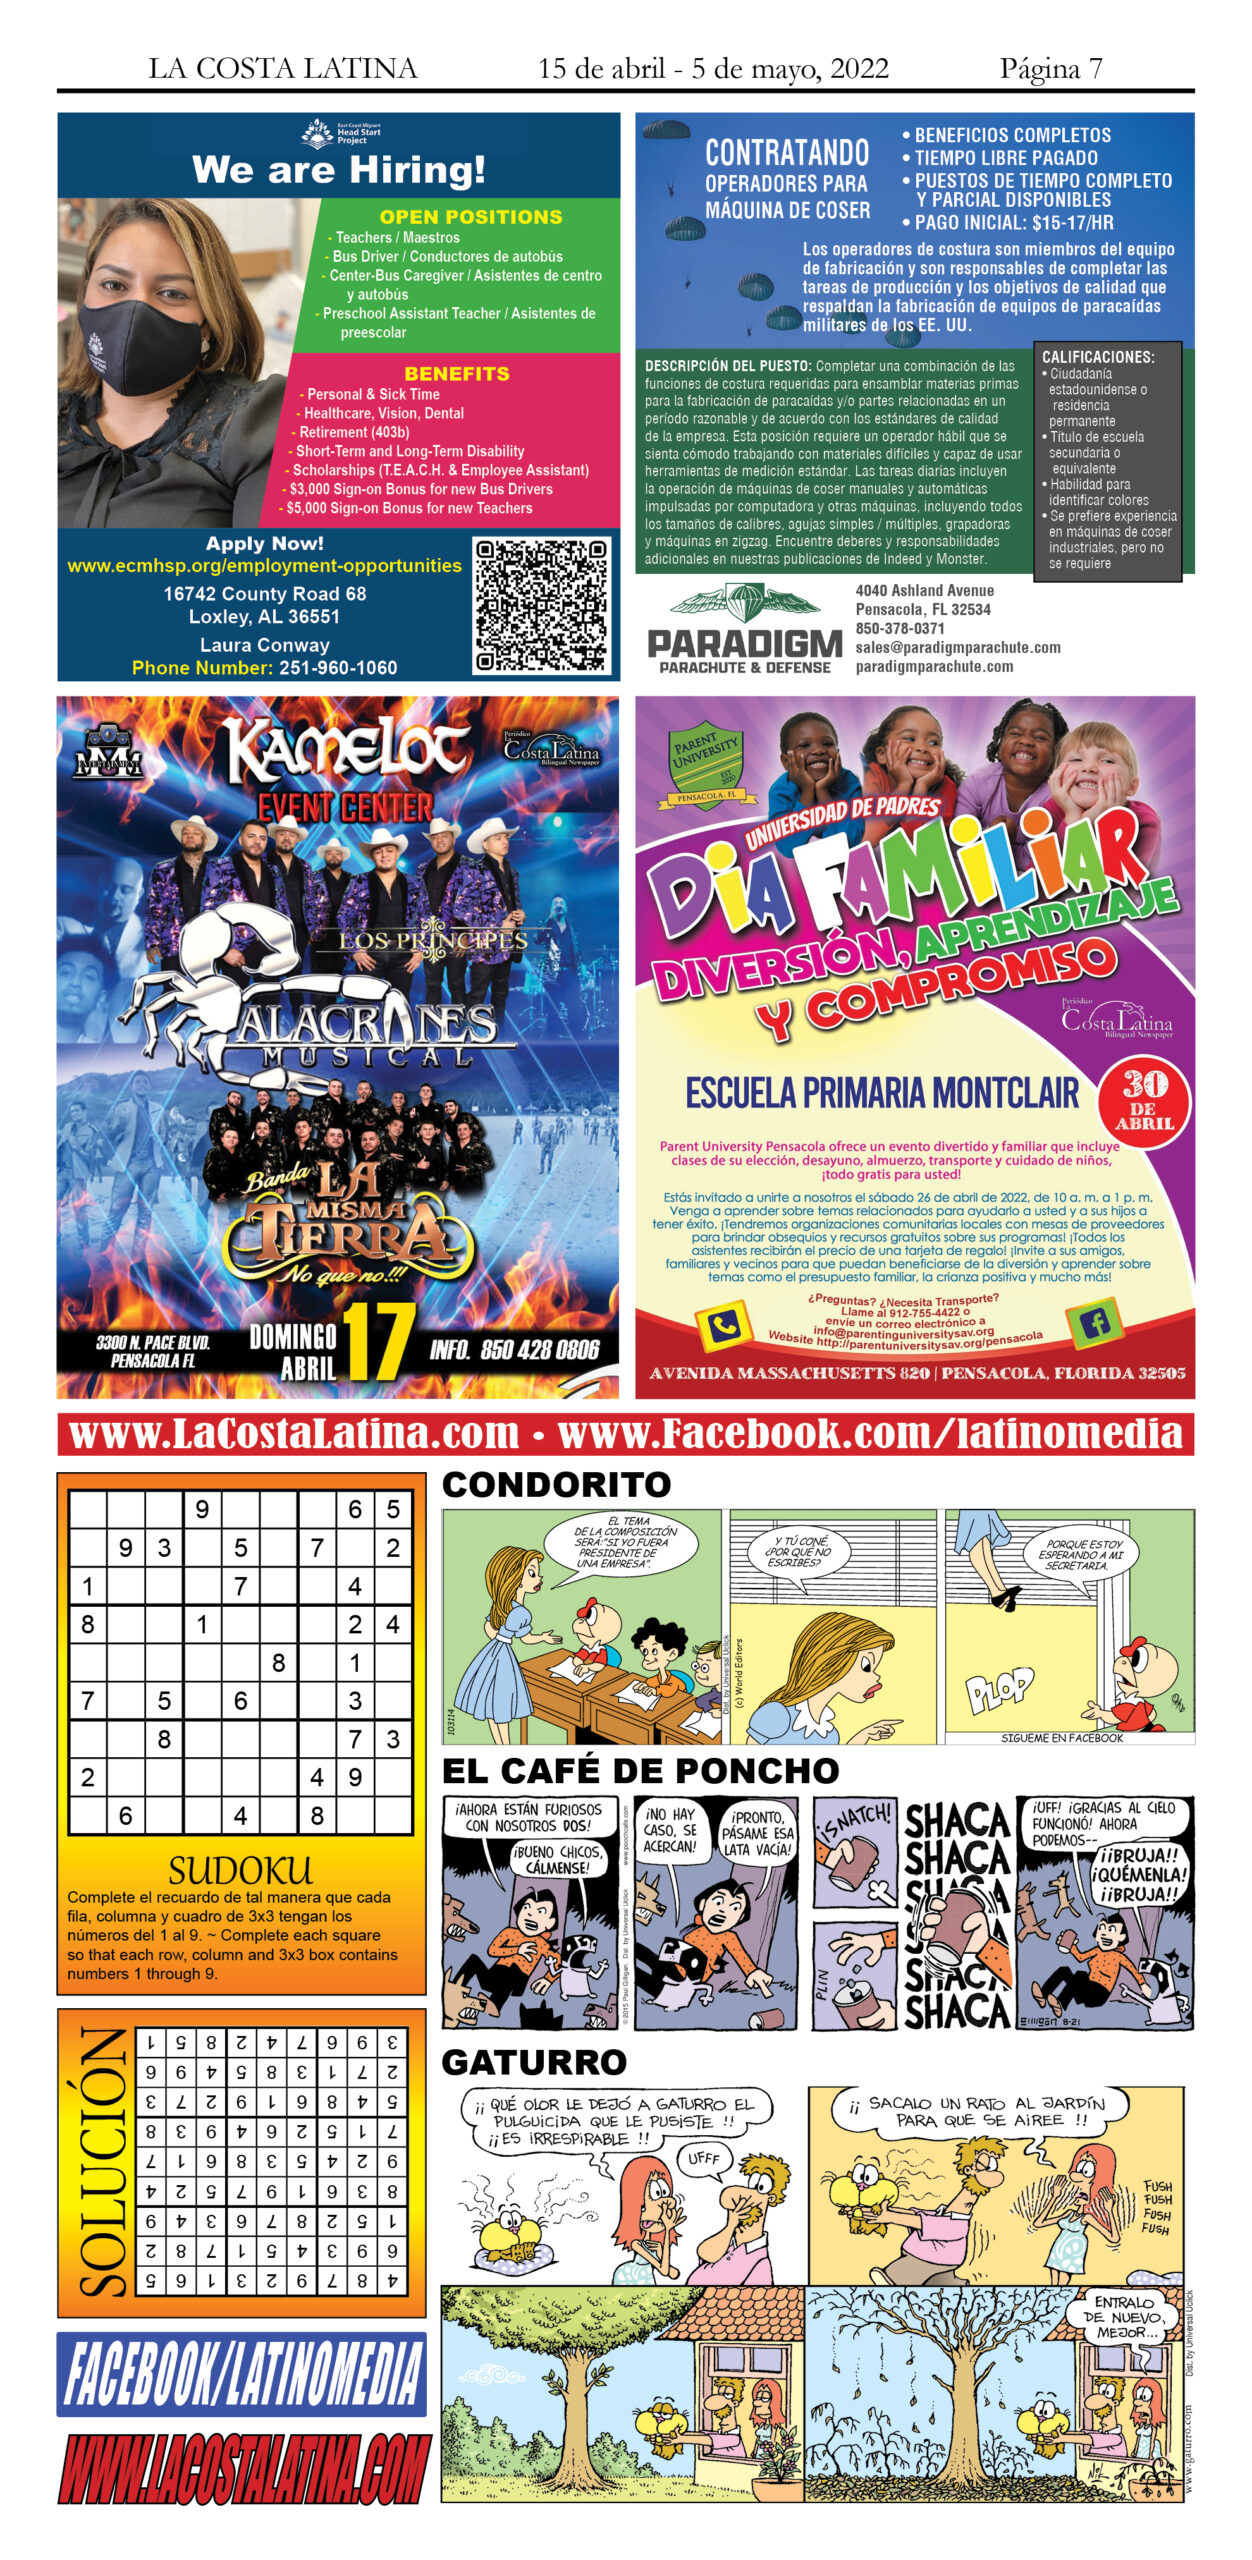 La Costa Latina April 15 - May 5 Page 7